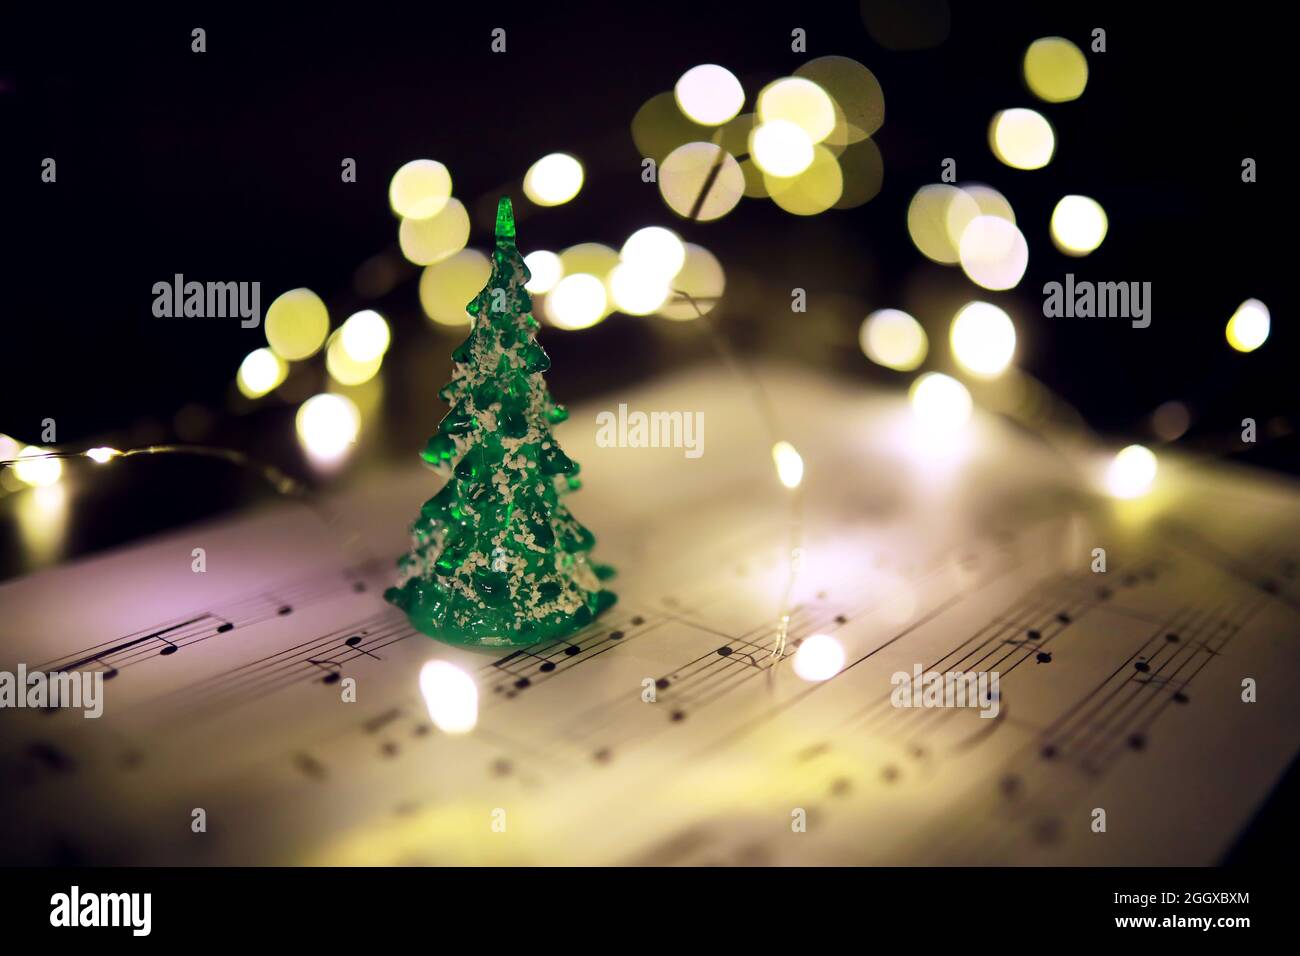 Không cần phải tìm kiếm bất cứ giấy nhạc nào khác, tại đây bạn sẽ có một bộ sưu tập các bản nhạc Giáng Sinh được thiết kế đầy tinh tế. Hãy chiêm ngưỡng những hình ảnh nền tuyệt đẹp với những ghi chú, nốt nhạc đầy thú vị để chuẩn bị cho một buổi hòa nhạc khiến cho bạn và gia đình phải mãn nhãn.